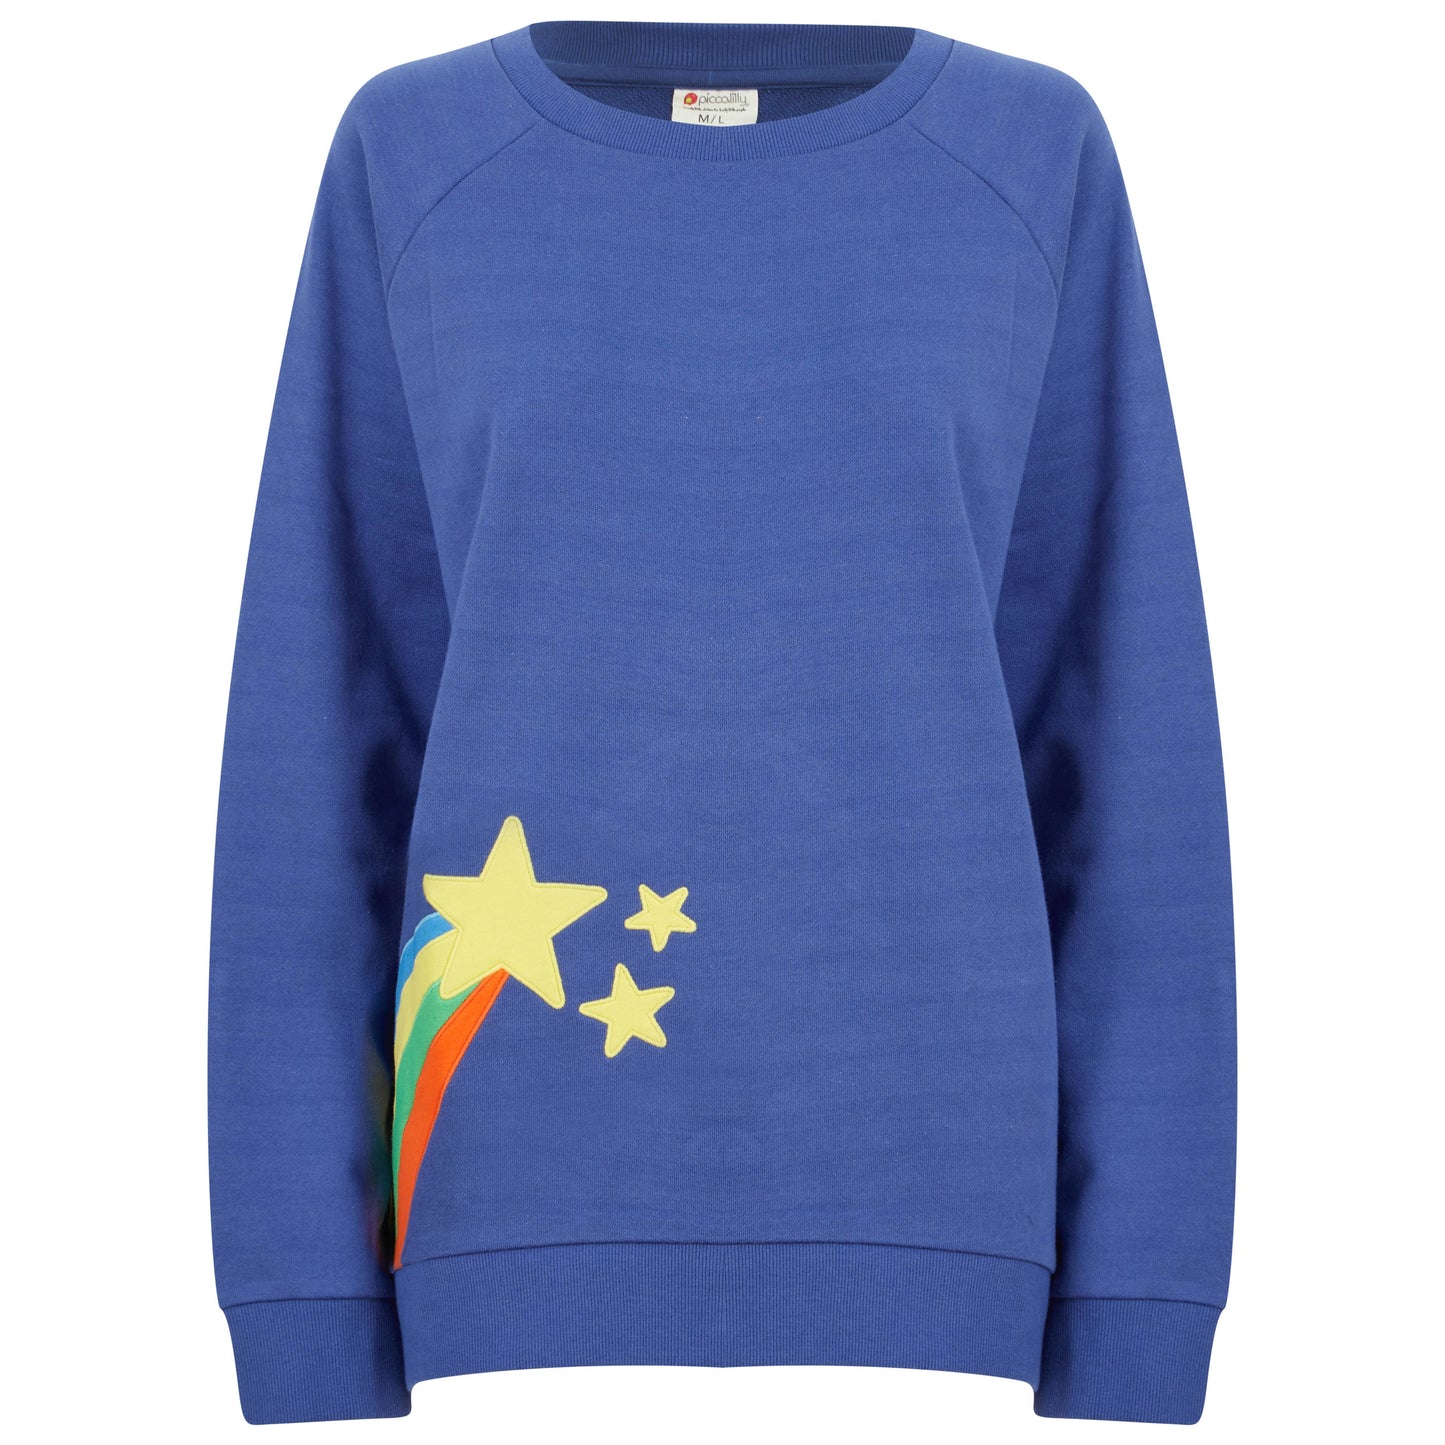 Sweatshirt (Women's Crew Neck) - Rainbow Applique